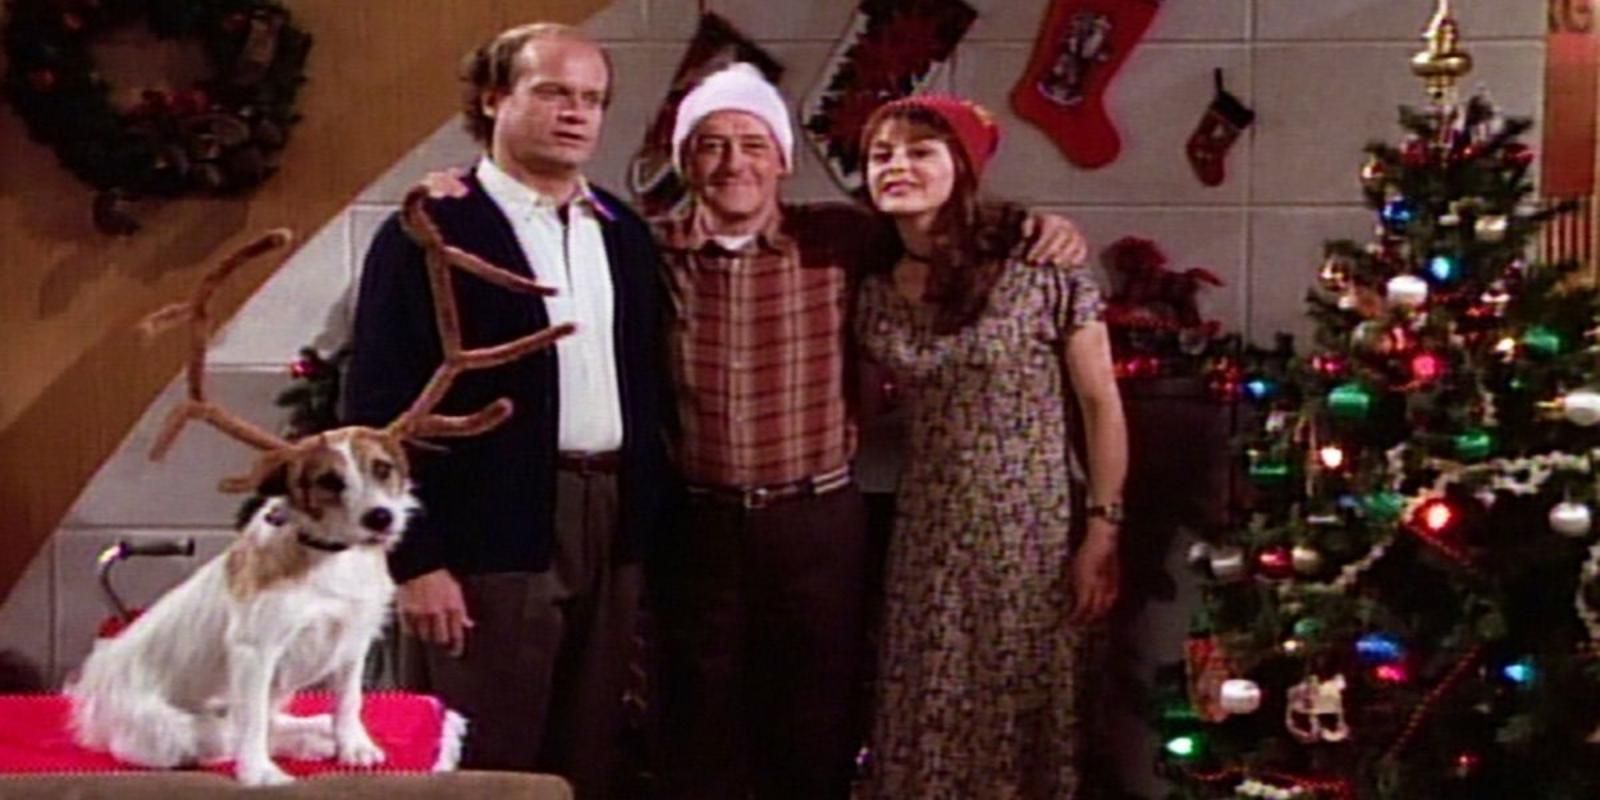 Eddie the dog wearing reindeer antlers in the Crane famiy Christmas photo in Frasier